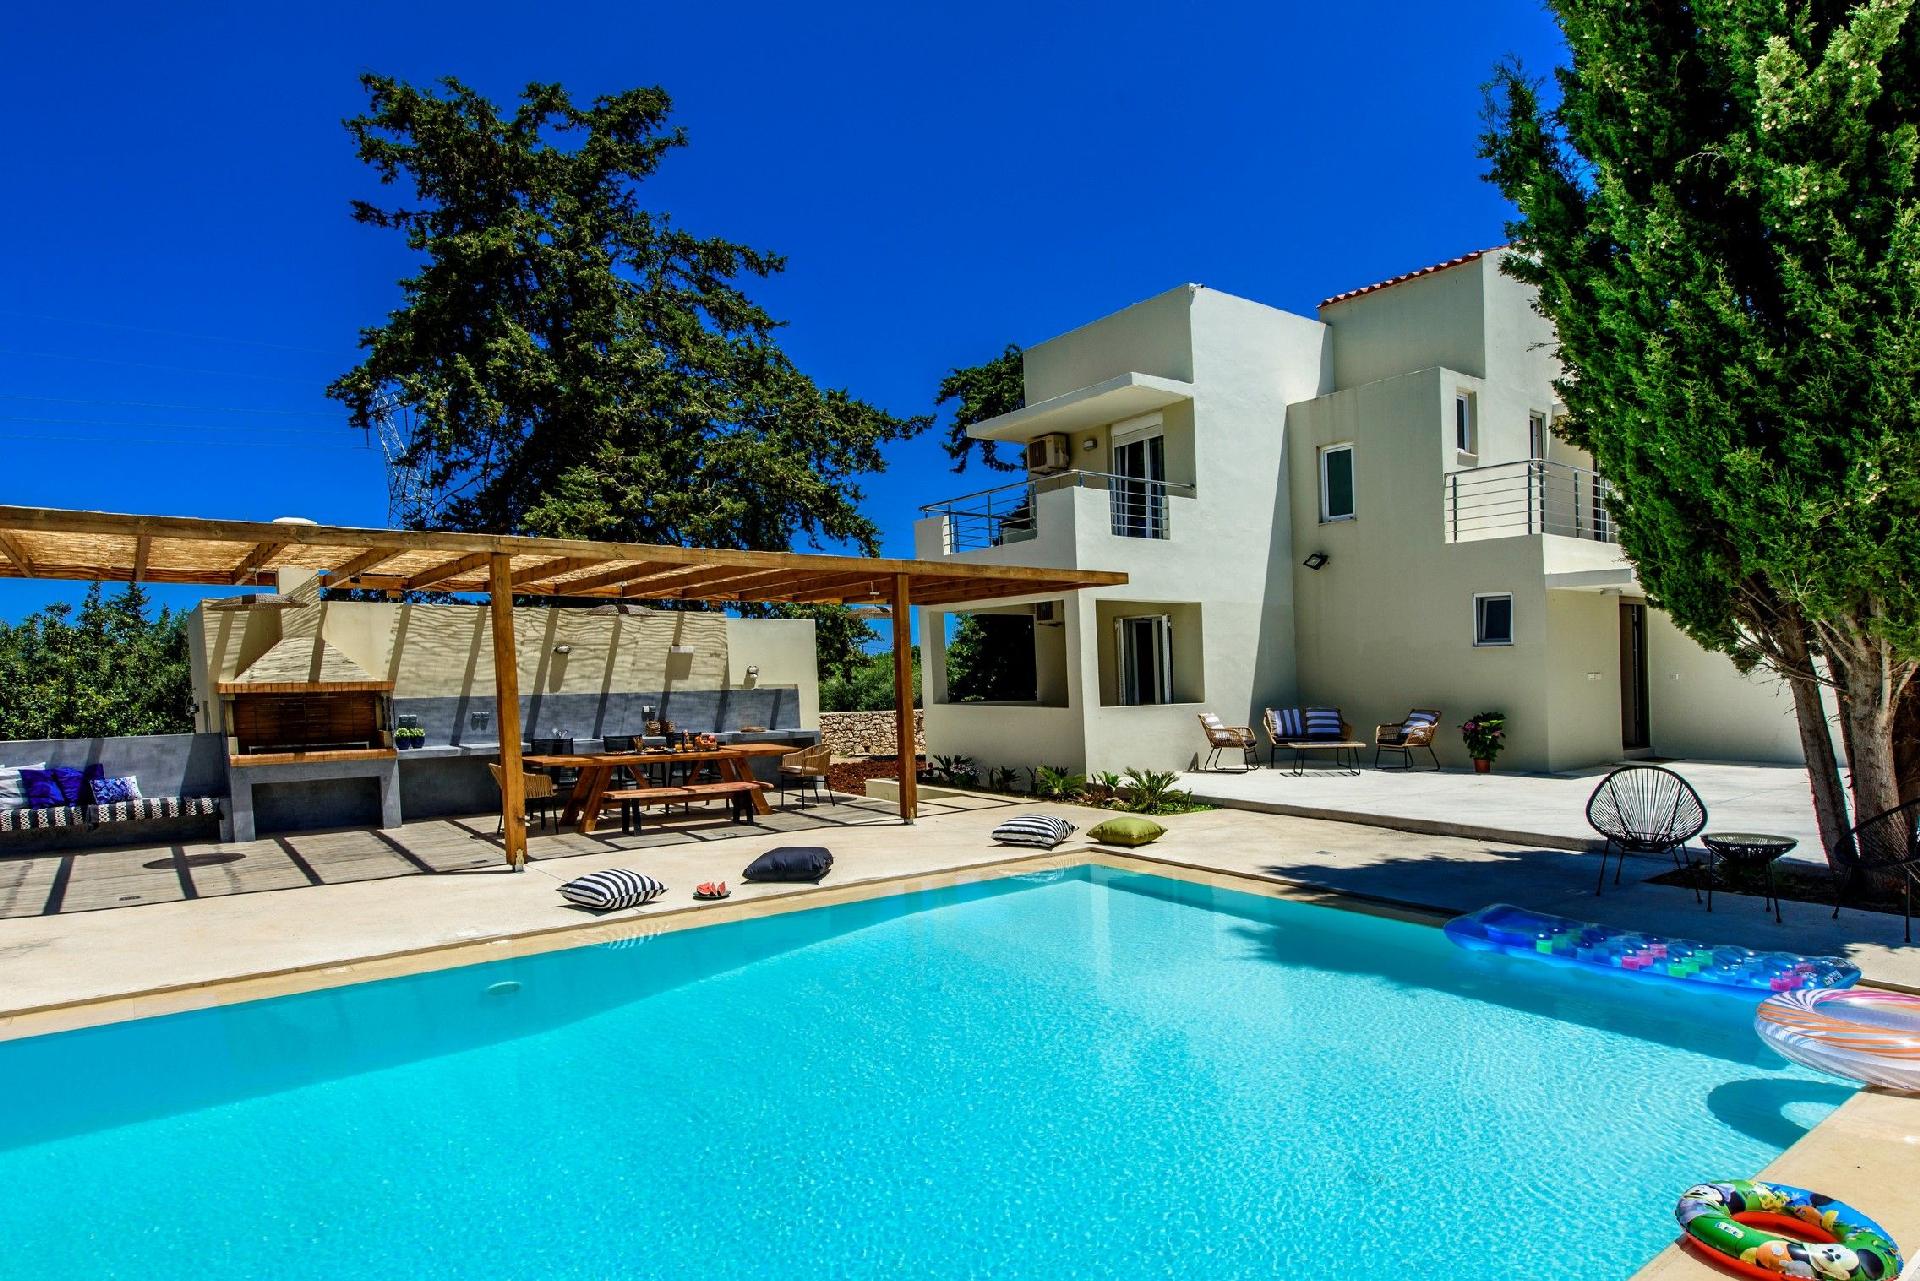 Ferienhaus mit Privatpool für 8 Personen  + 2 Ferienhaus  Kreta